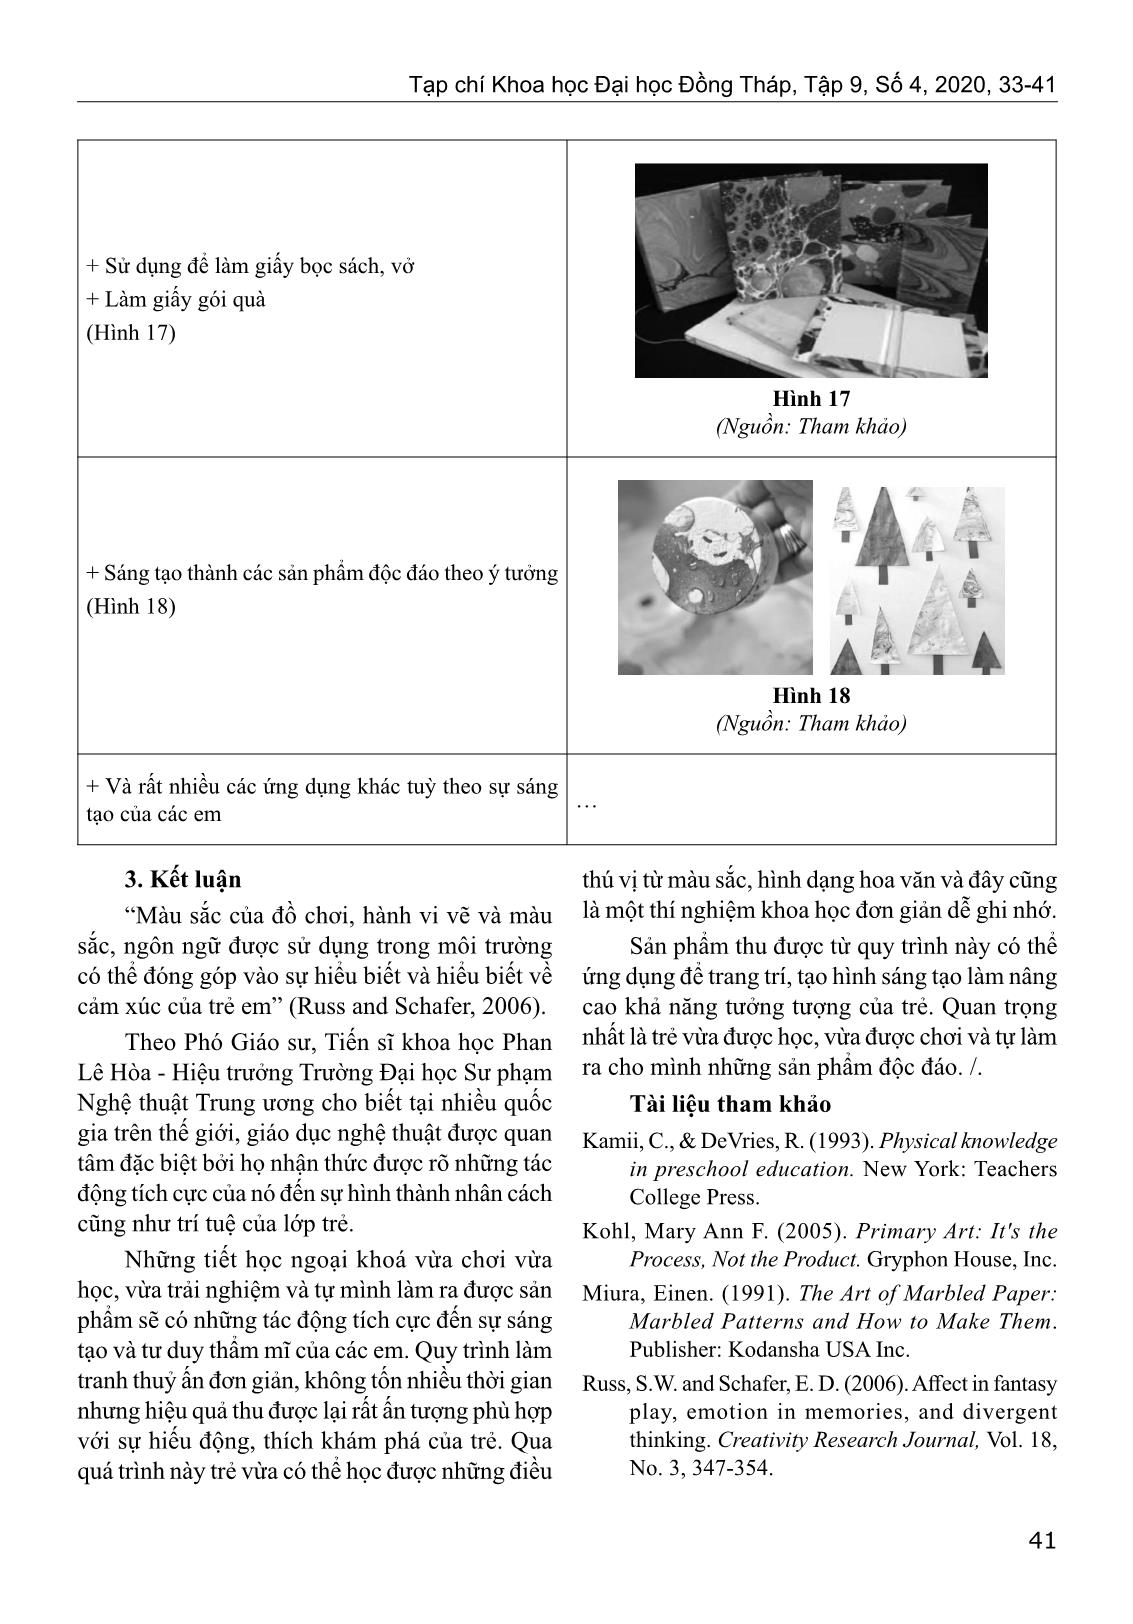 Thiết kế hoạt động trải nghiệm sáng tạo làm tranh thuỷ ấn trên giấy cho học sinh lớp 4 - 5 trang 9